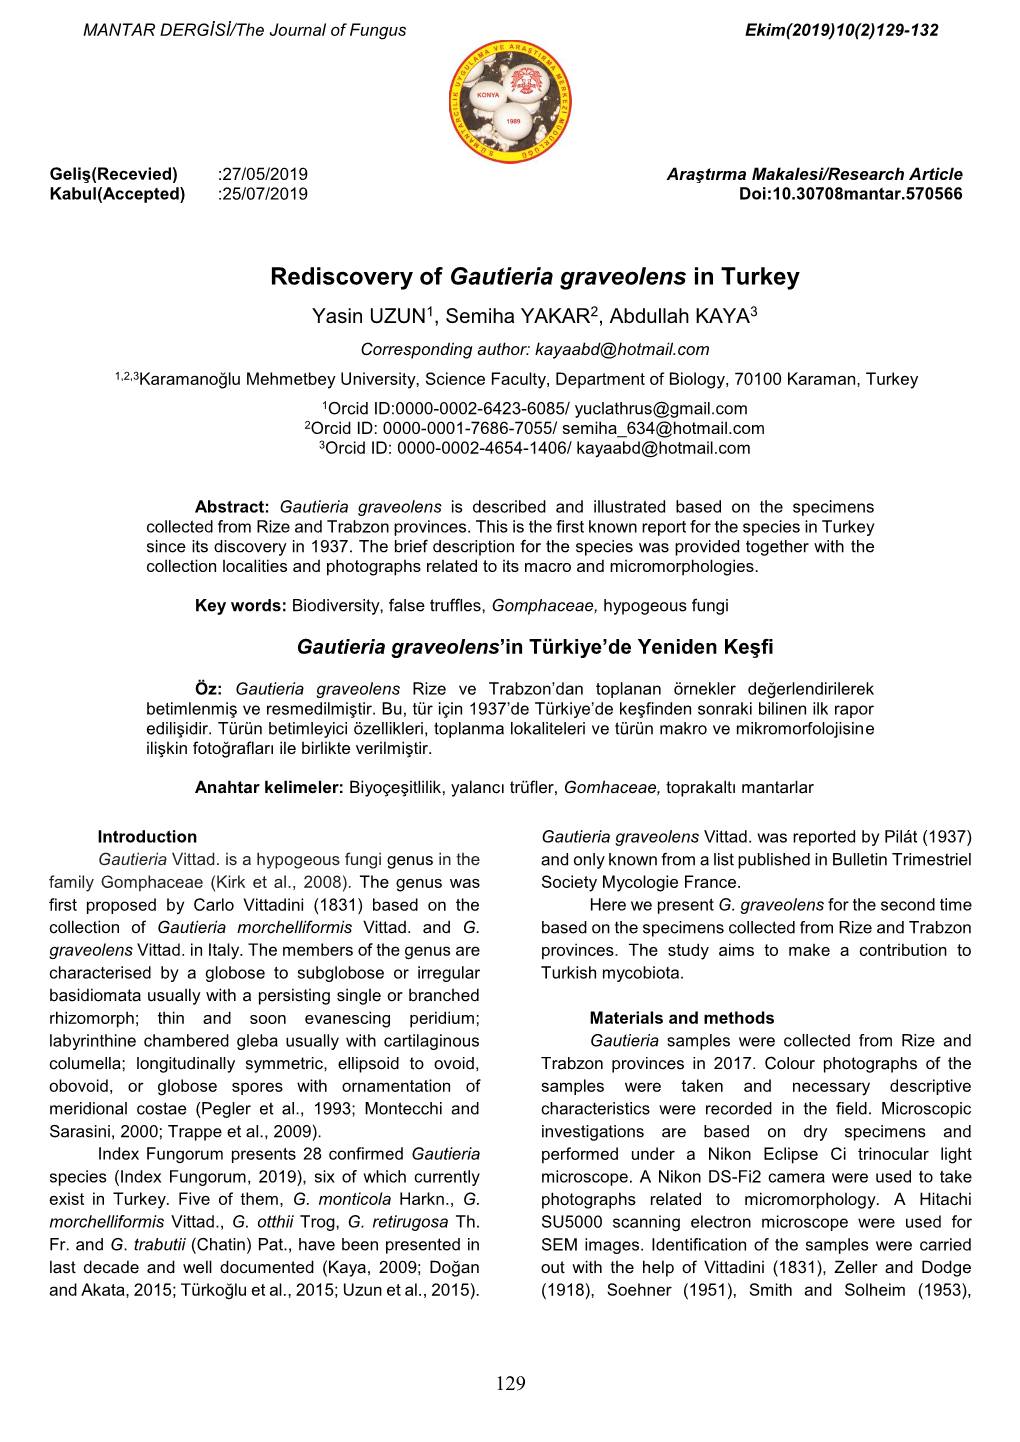 Rediscovery of Gautieria Graveolens in Turkey